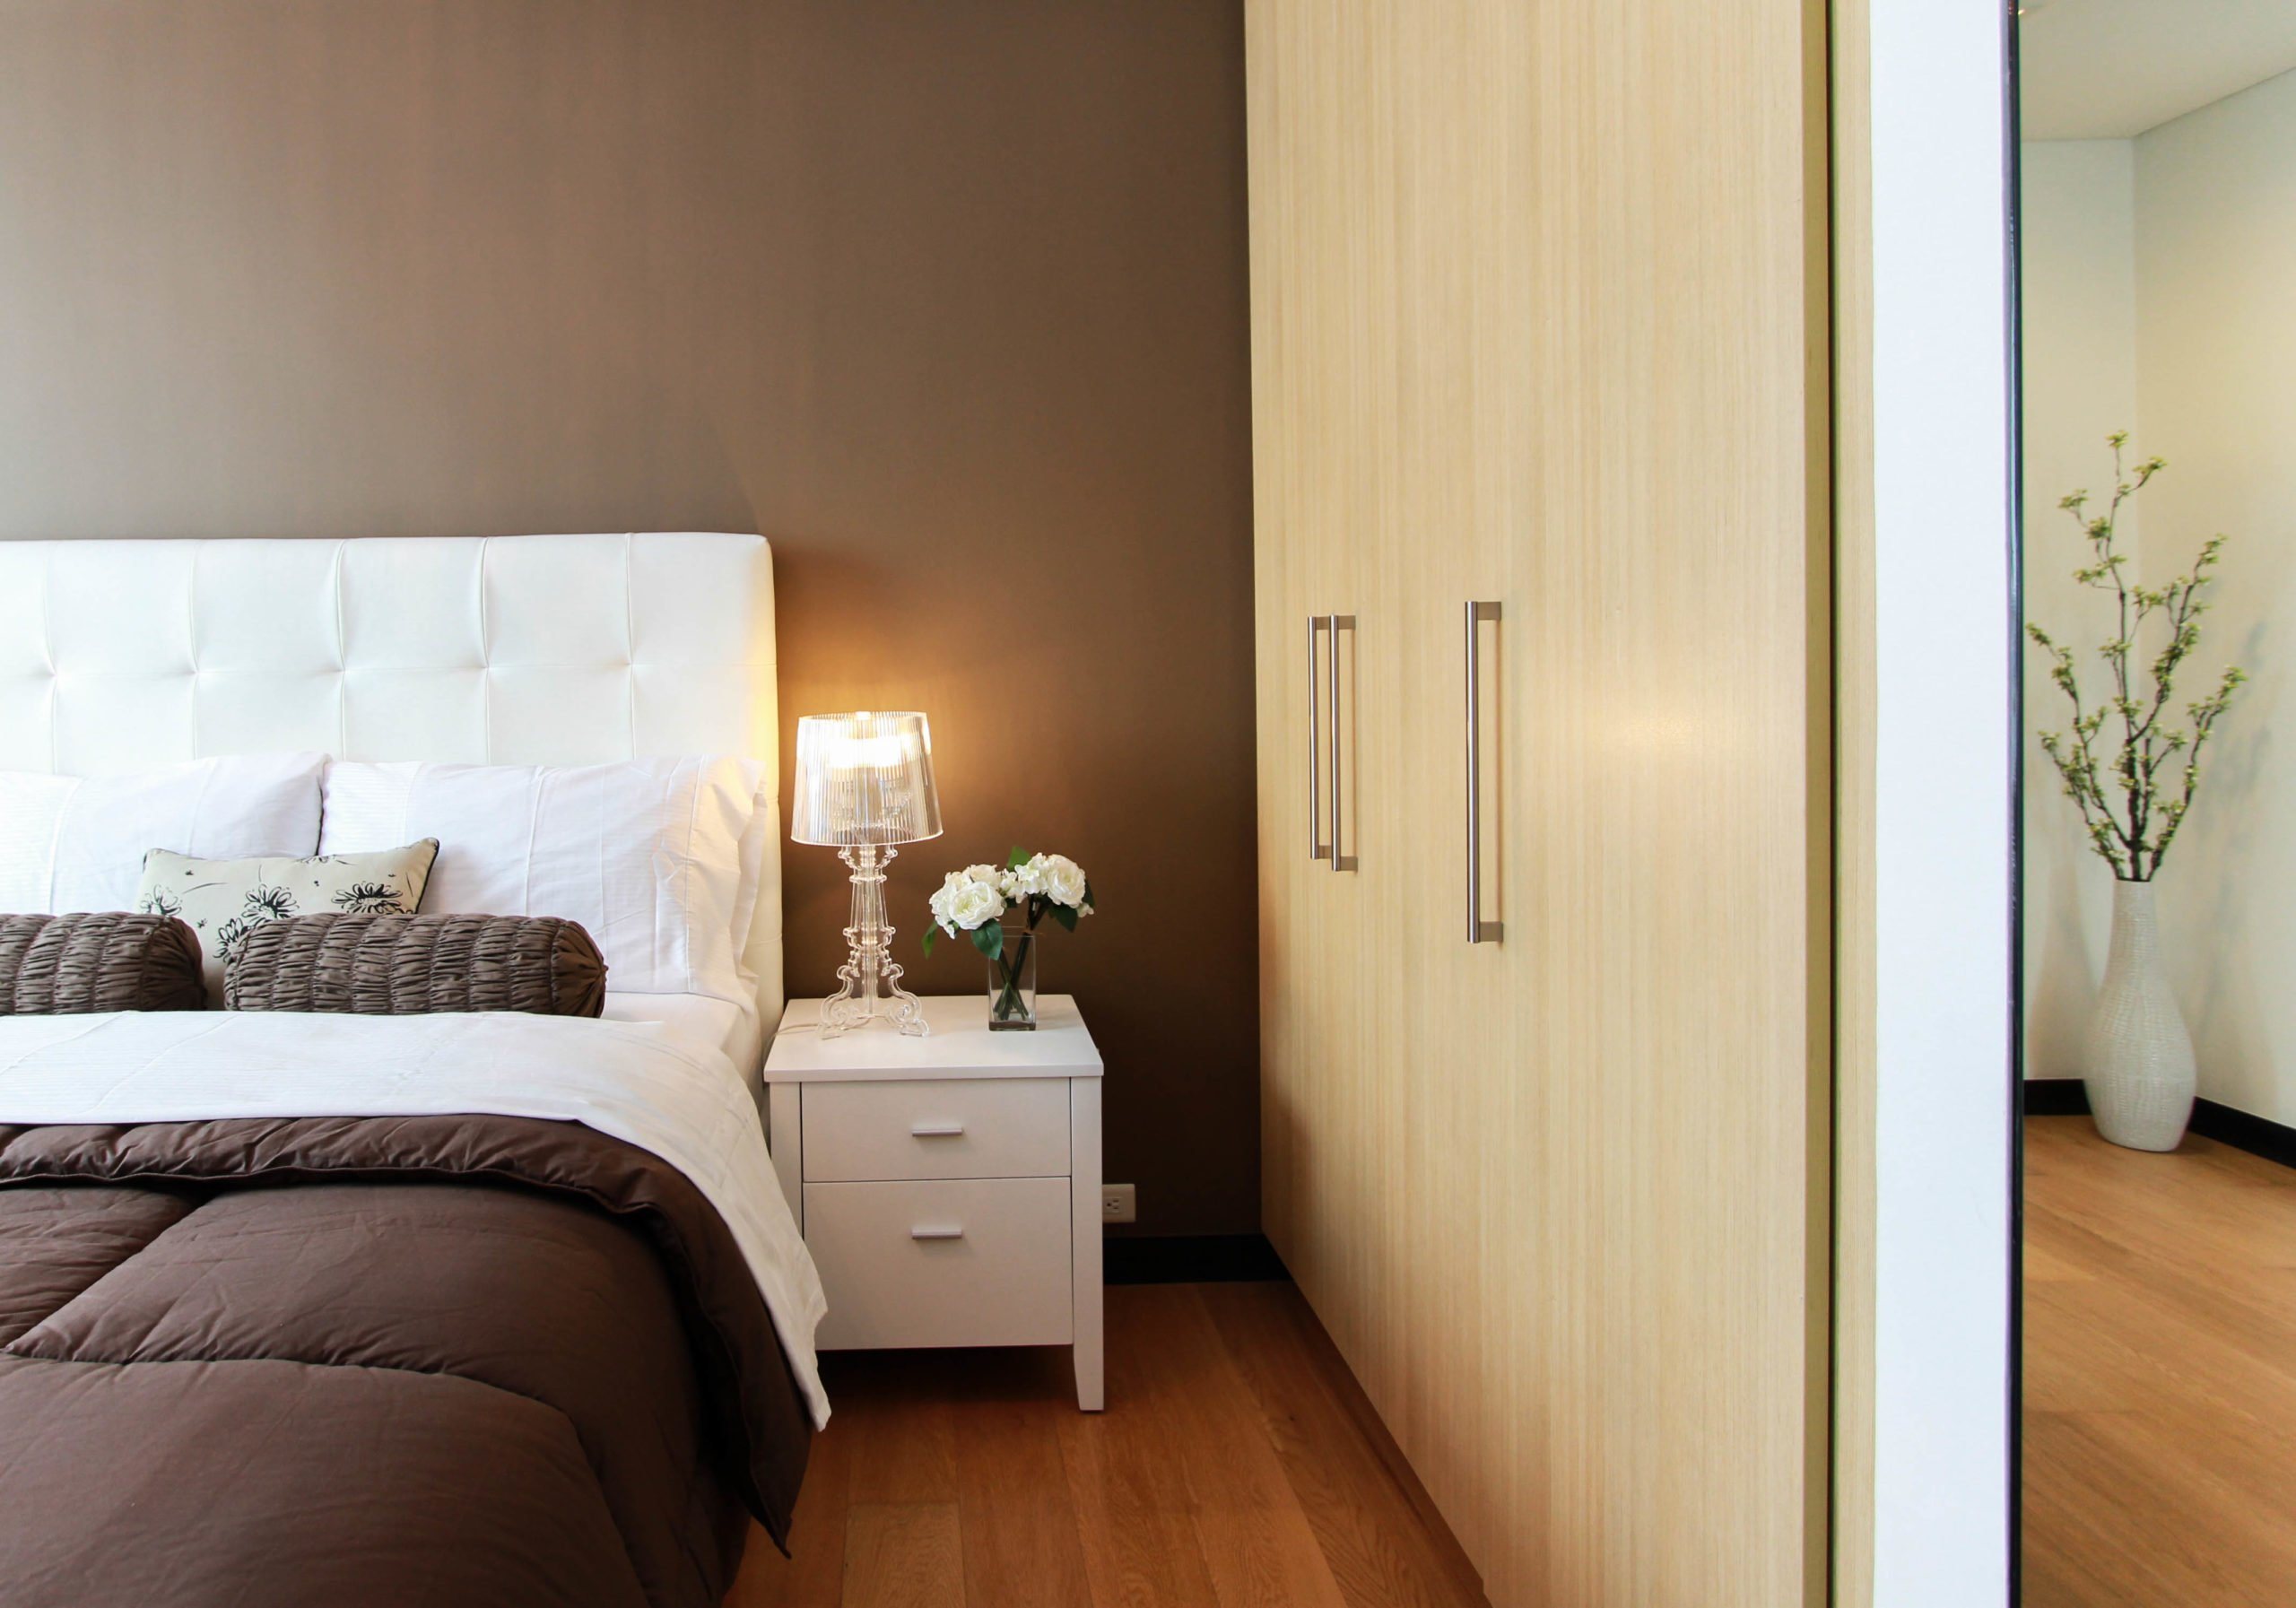 57 Ide Cantik Desain Kamar Tidur Hotel Bintang 5 Yang Belum Banyak